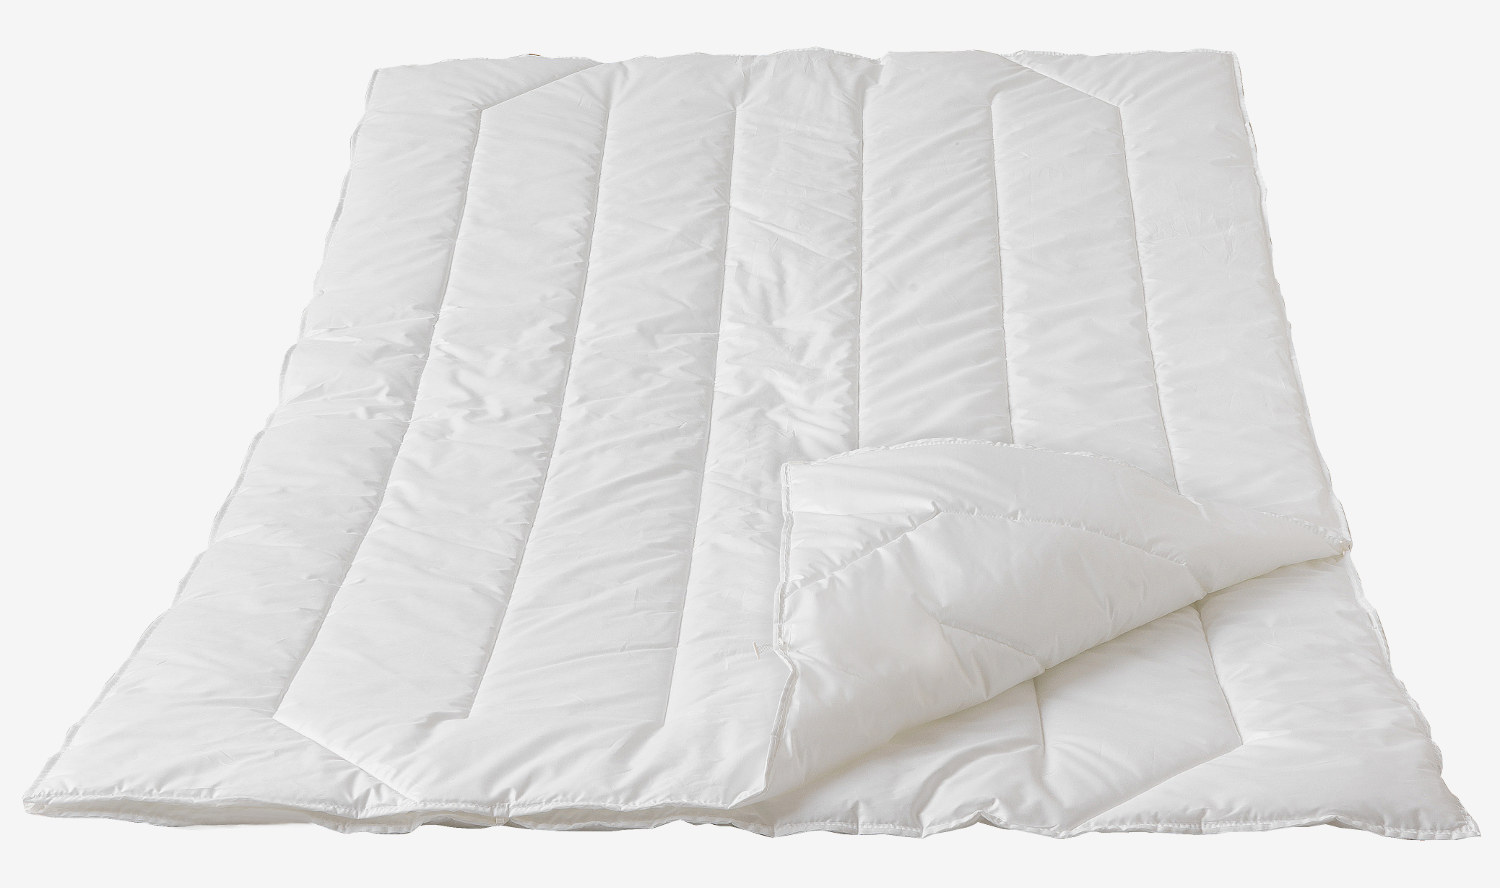 Traumina Exclusive Faser, 4 Jahreszeiten Bettdecke, waschbar